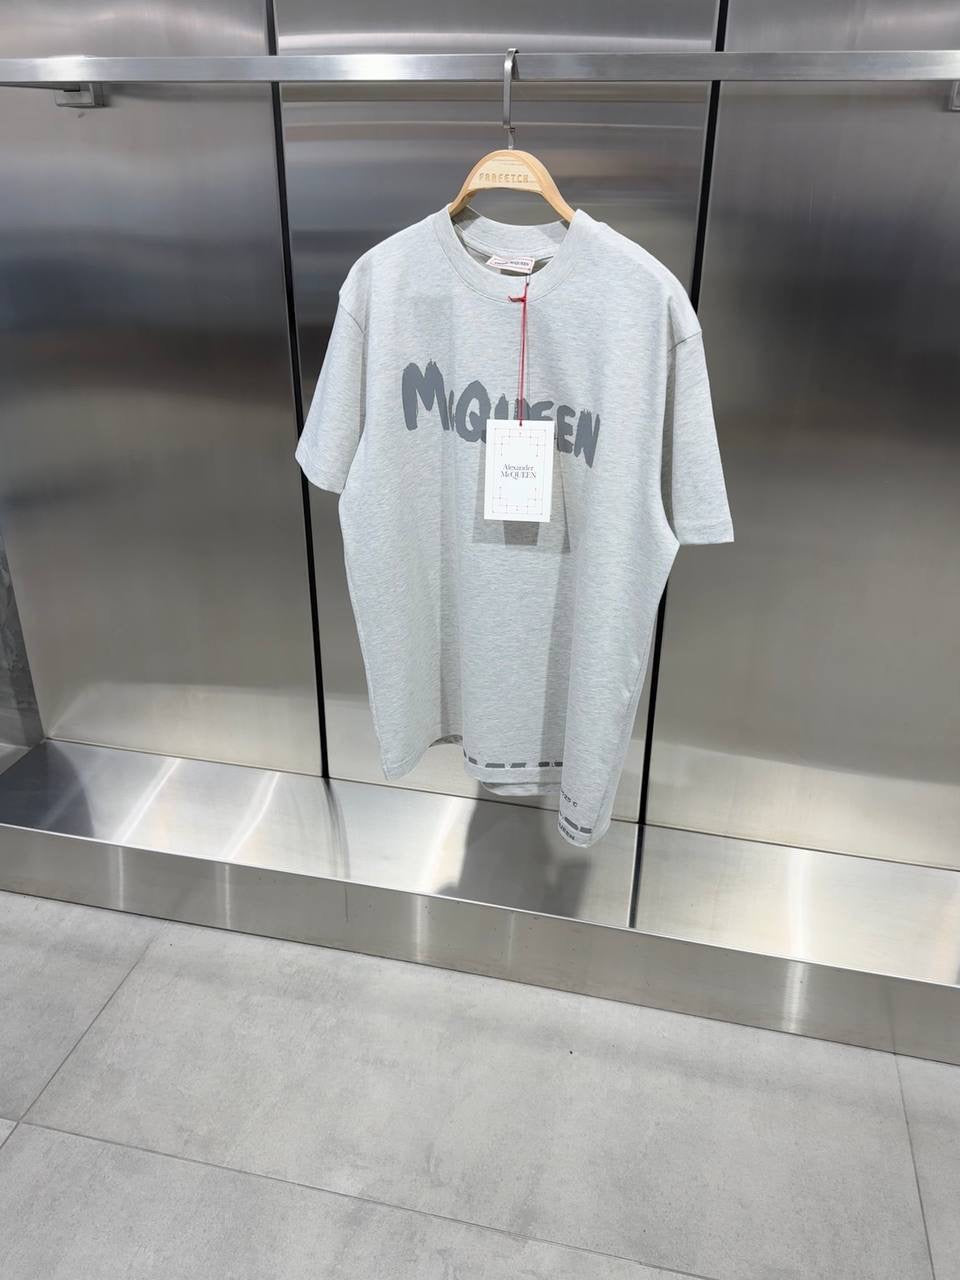 McQueen T-shirt